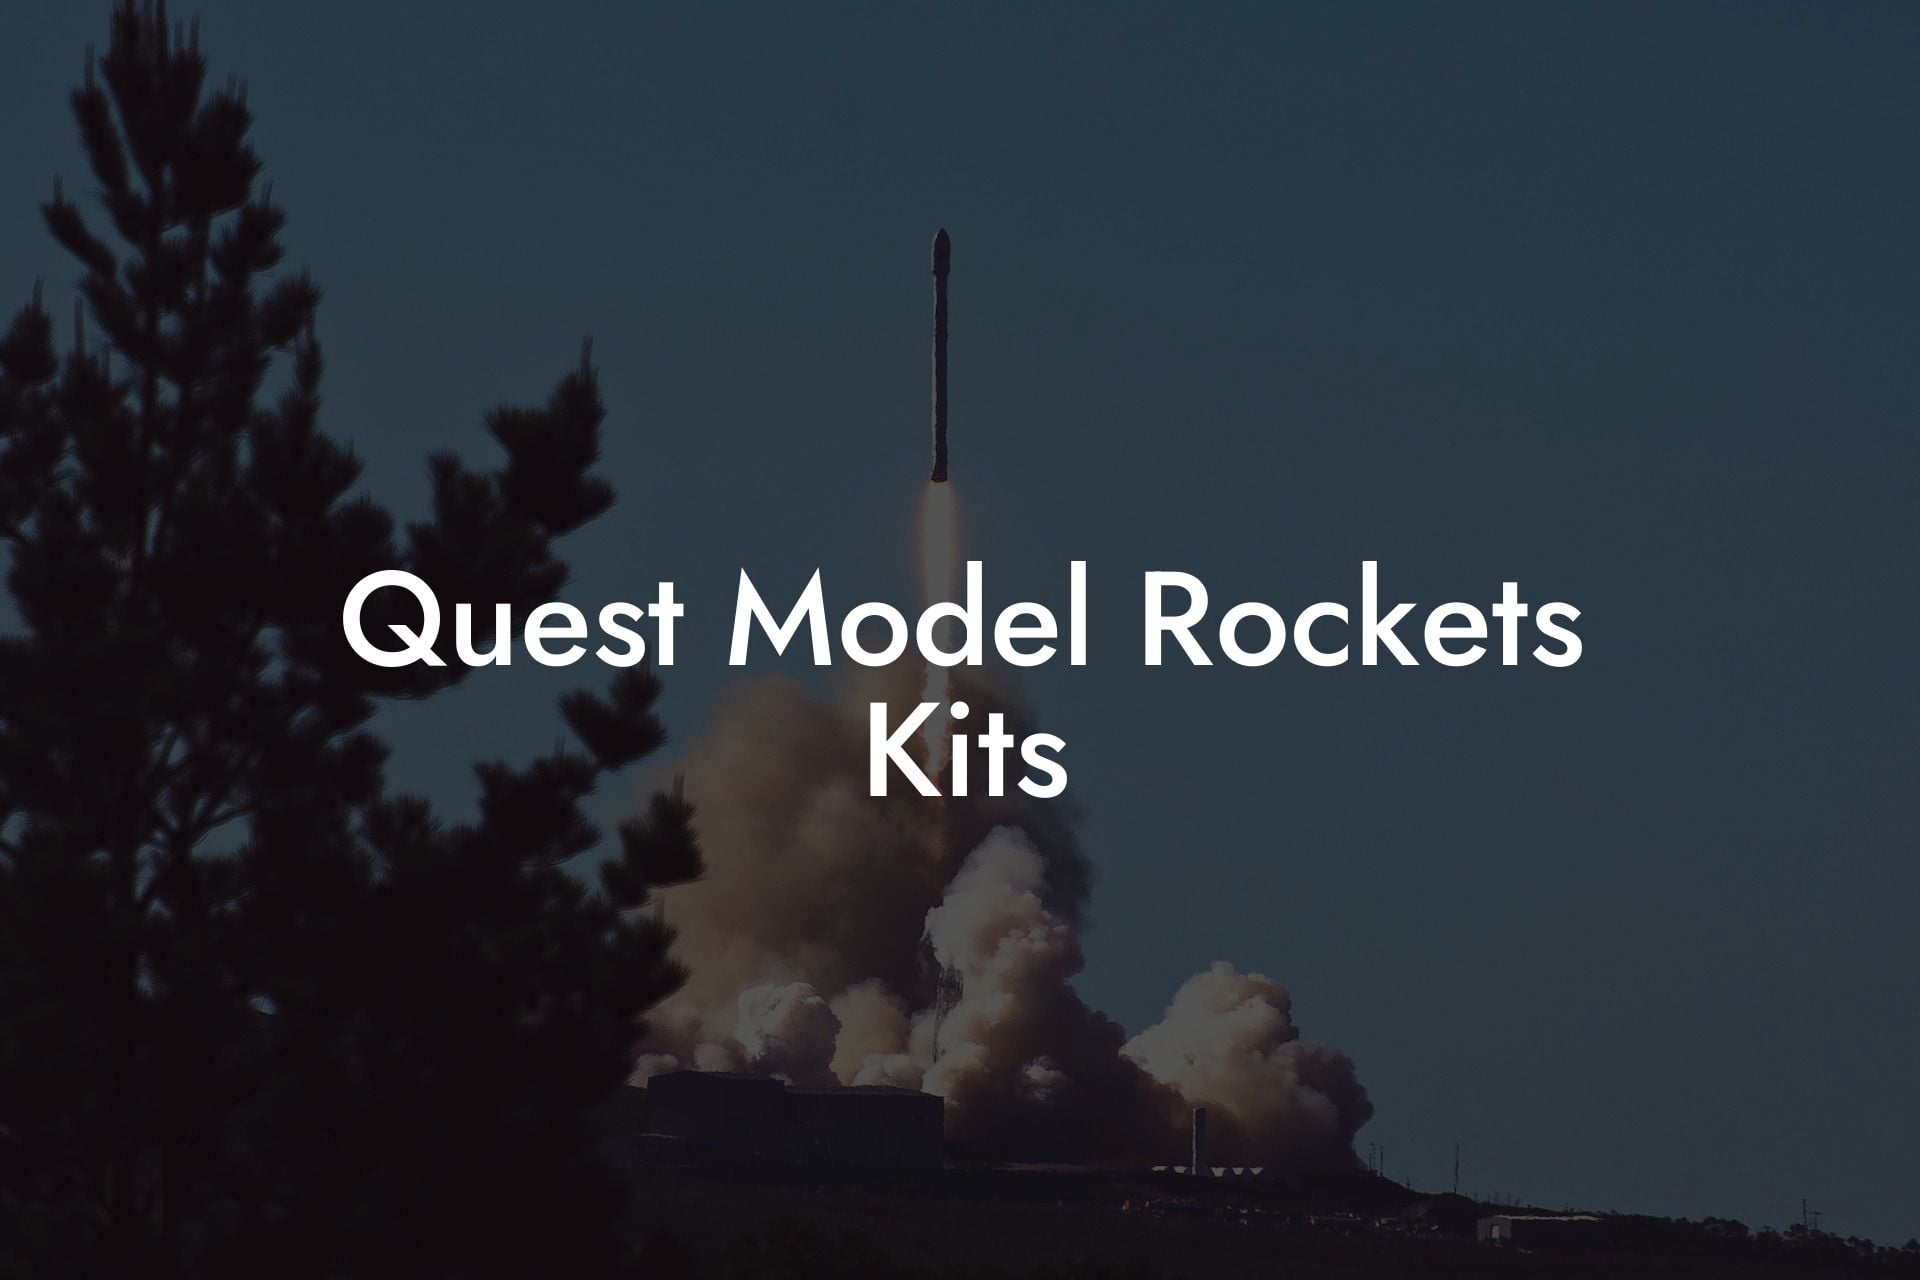 Quest Model Rockets Kits